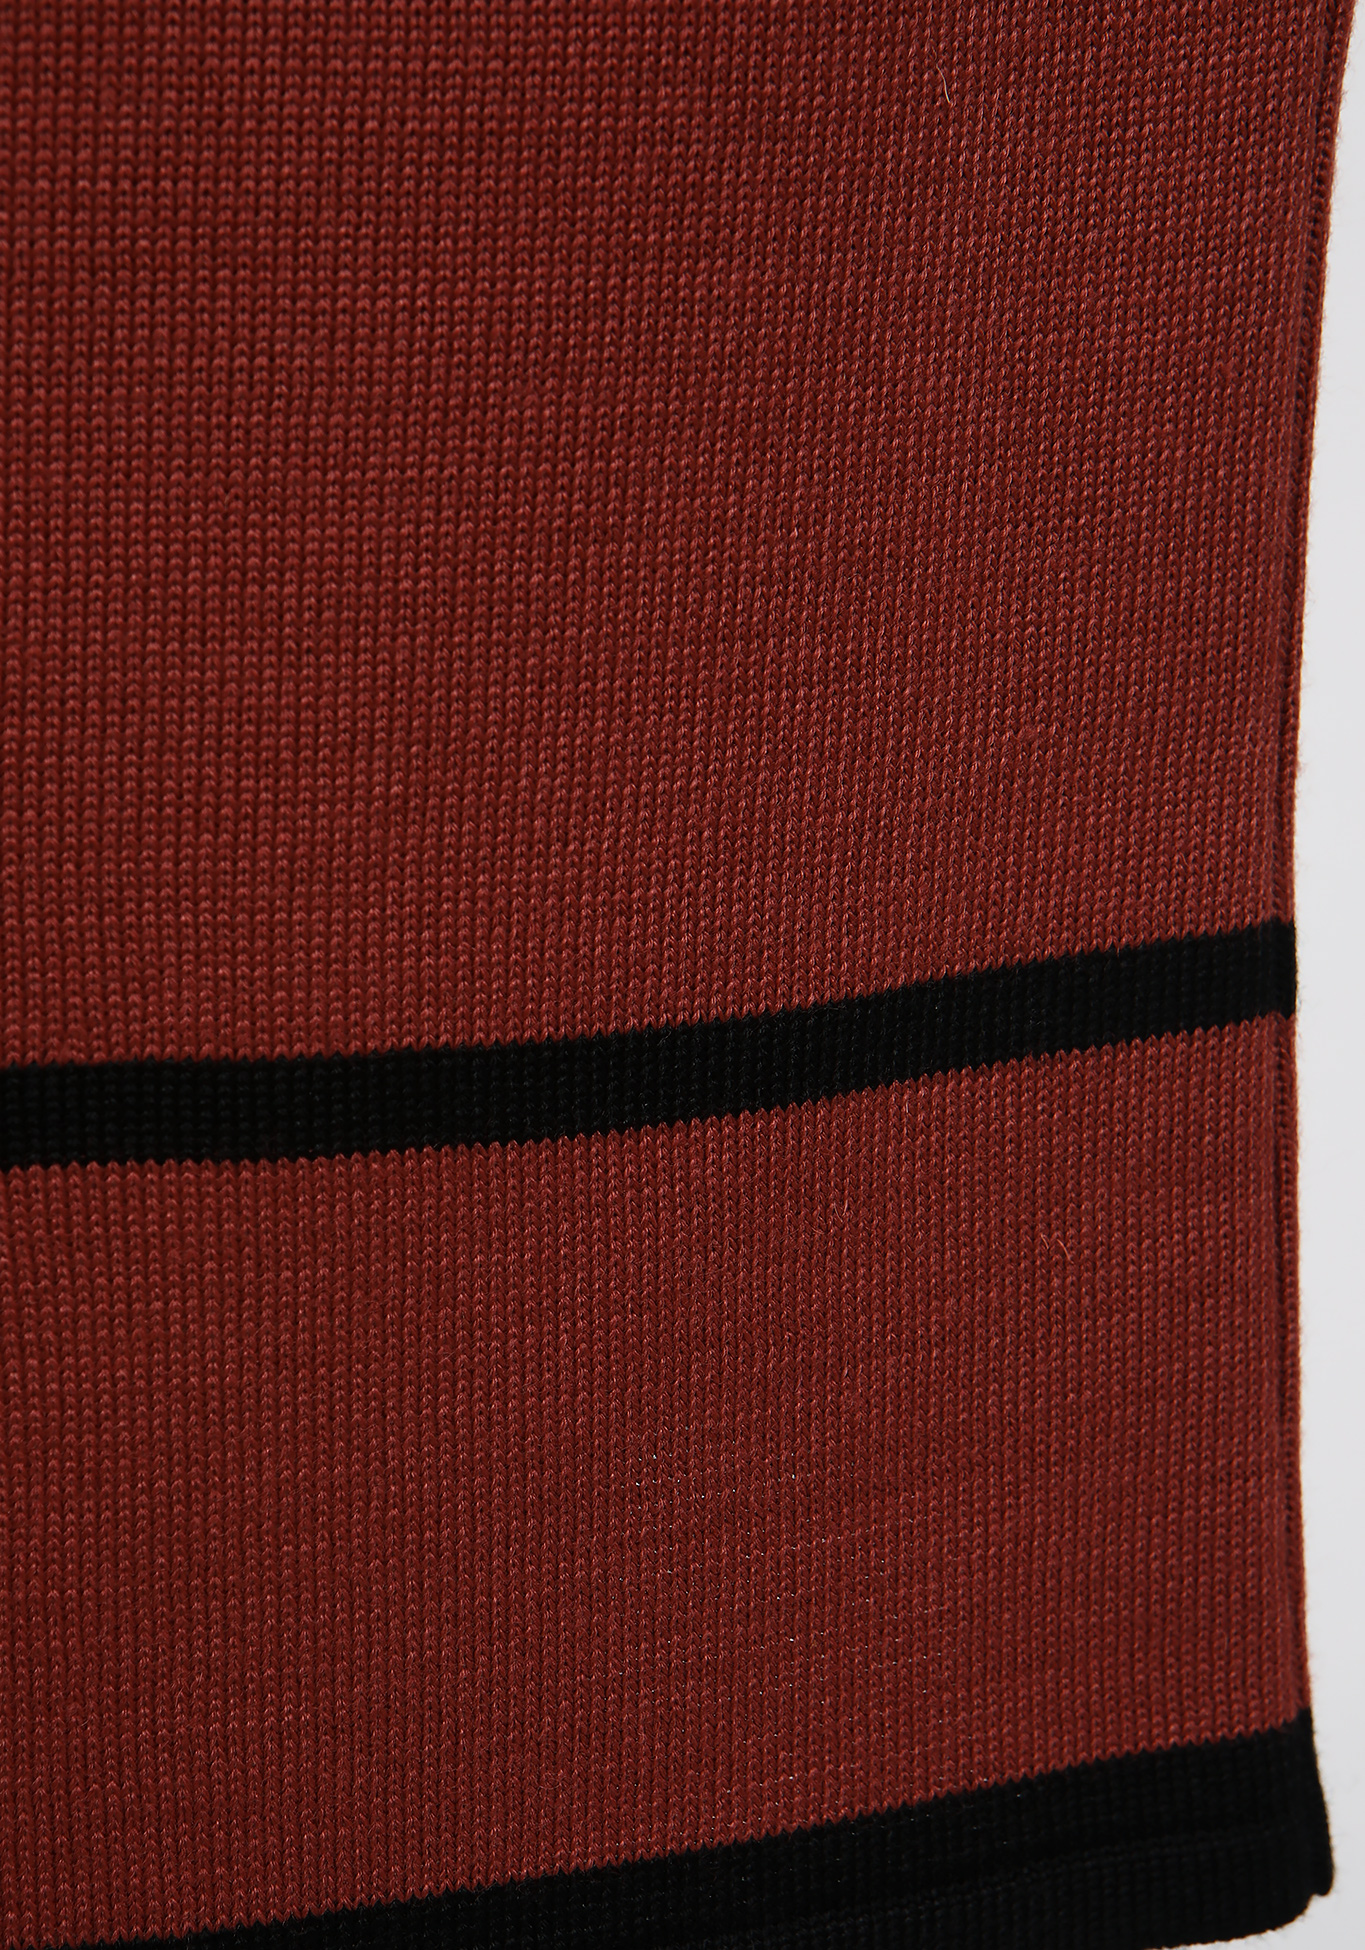 Юбка прямая на мягкой резинке Vivawool, размер 48, цвет терракотовый - фото 4